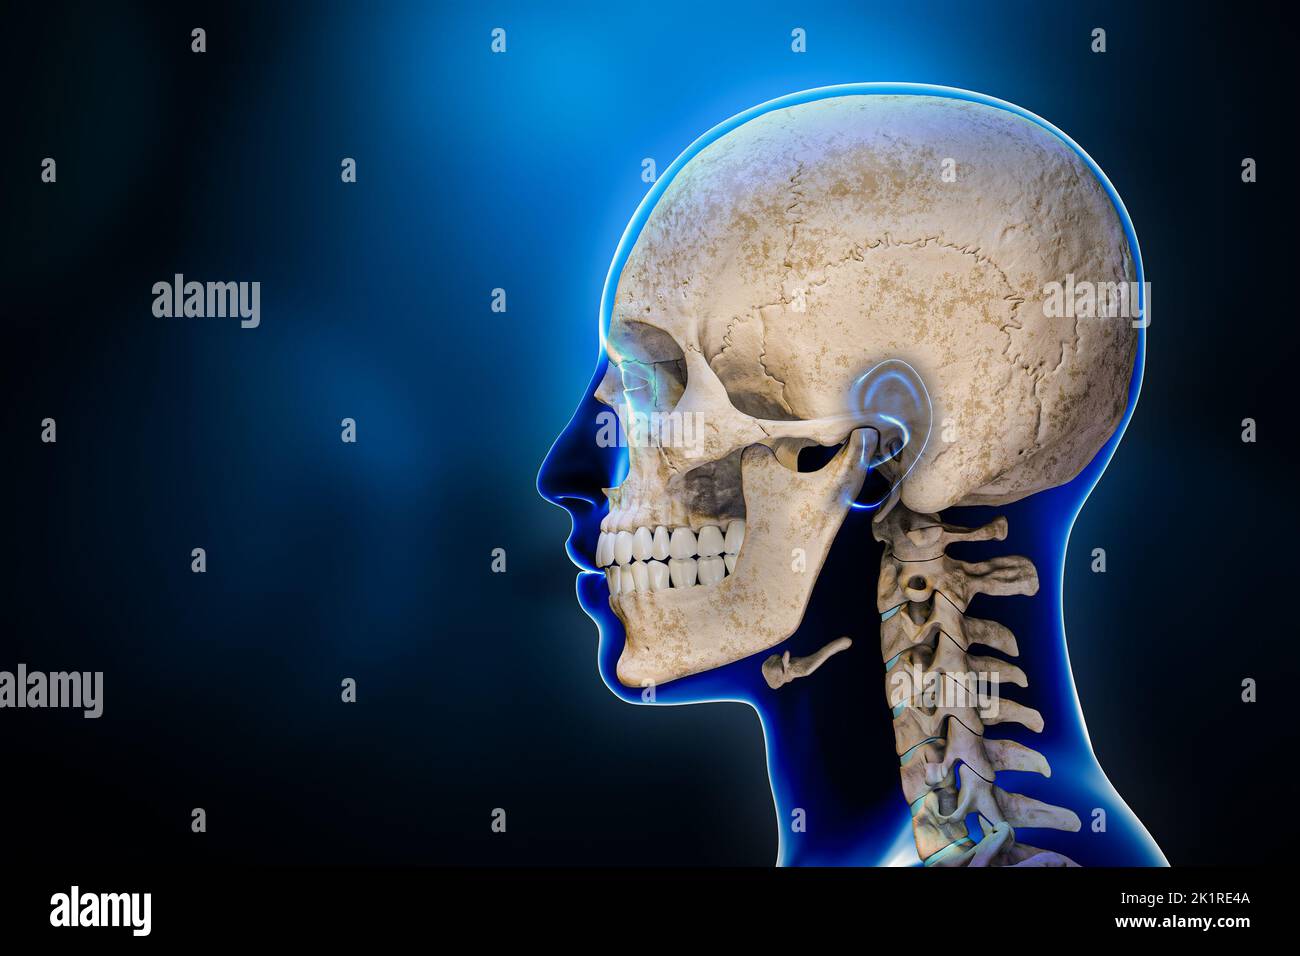 Vue latérale ou en profil des os du crâne humain avec vertèbres cervicales et contours du corps masculin 3D illustration de rendu sur fond bleu. Anatomie, moyenne Banque D'Images